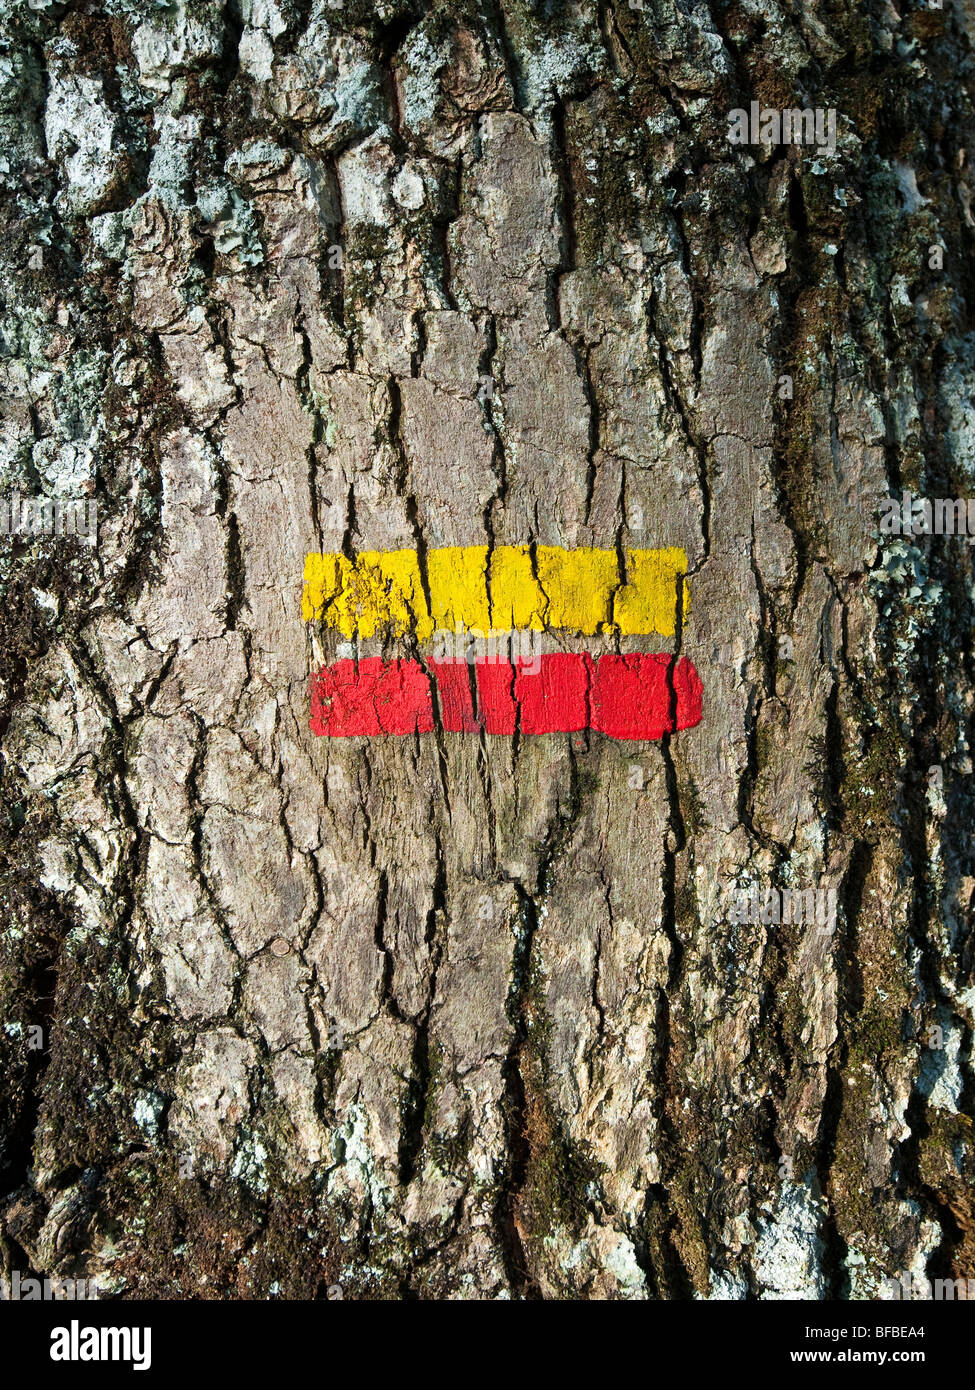 Sentier Public droit de passage les marqueurs sur tronc d'arbre de chêne - France. Banque D'Images